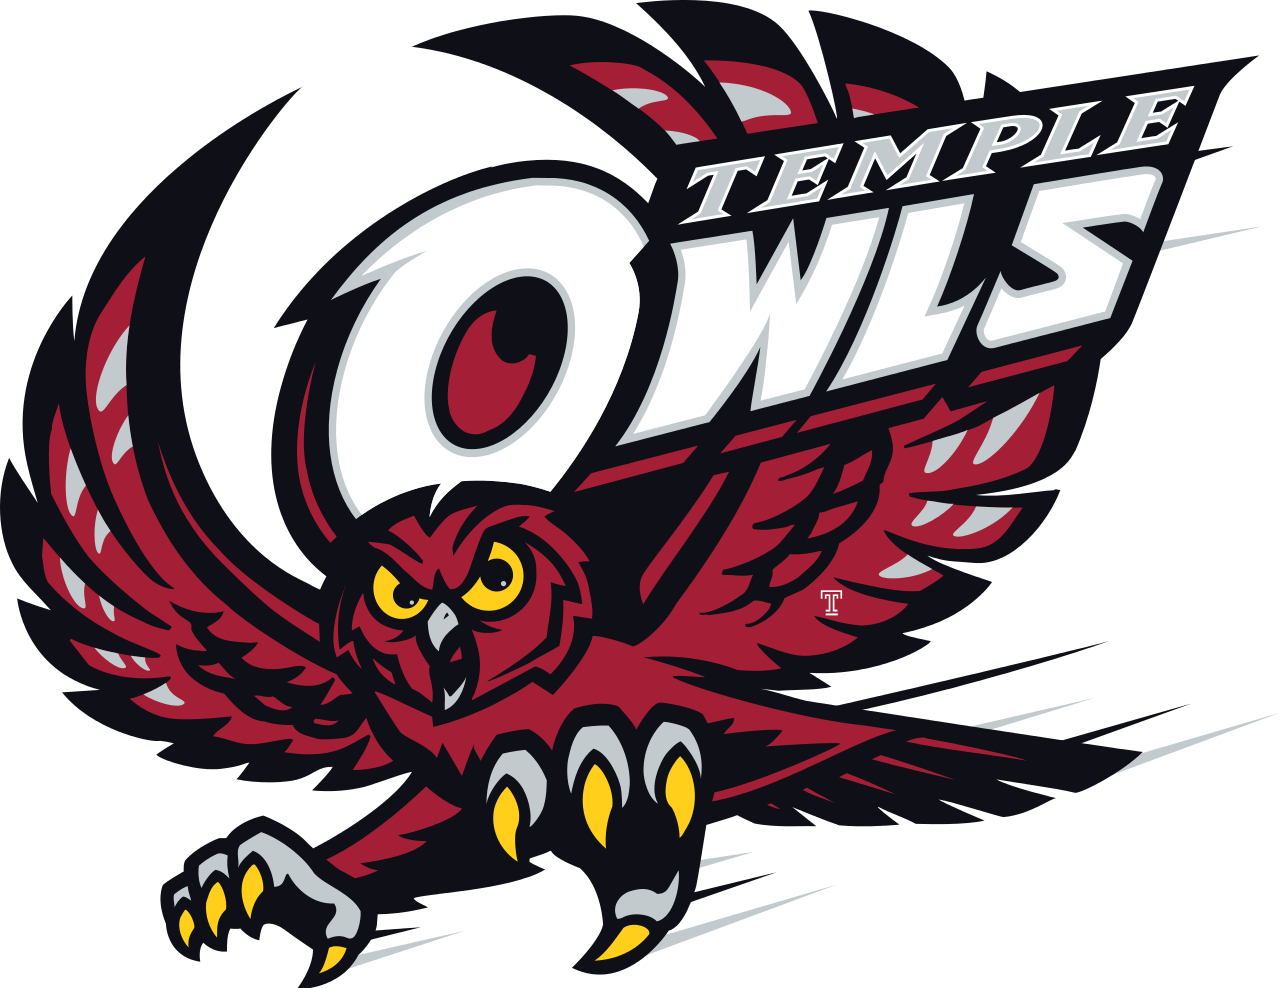 Women's Hoop Dirt - Temple Owls Men's Basketball (1280x988)